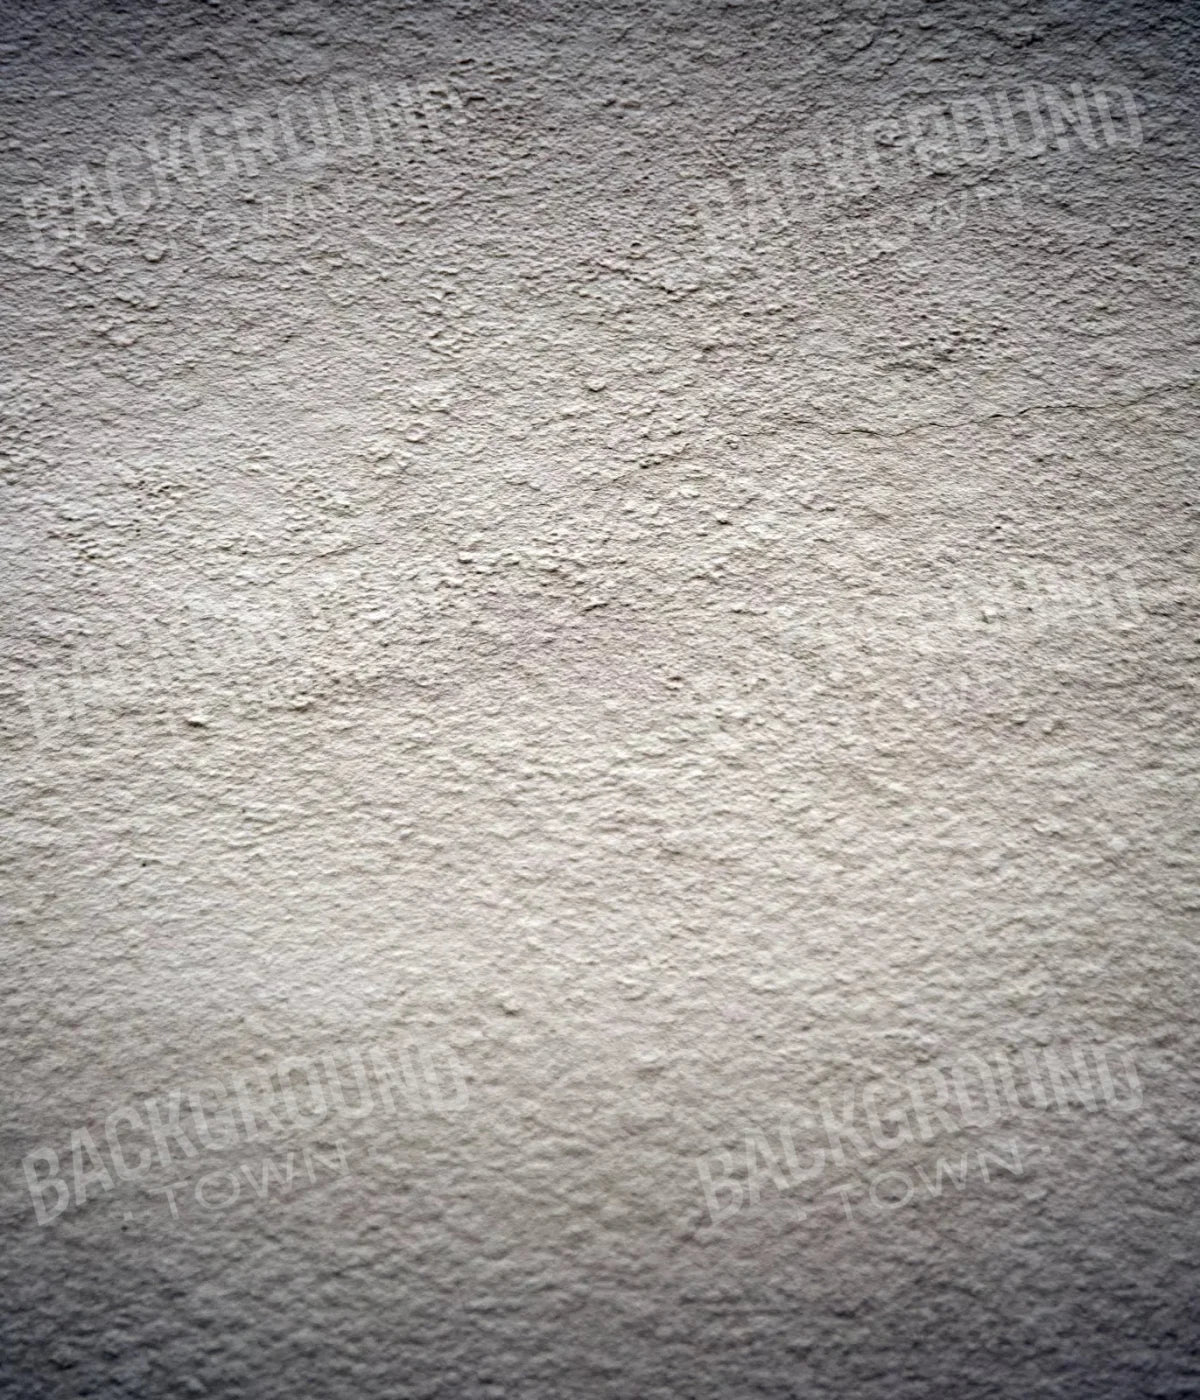 Concrete Jungles 10X12 Ultracloth ( 120 X 144 Inch ) Backdrop